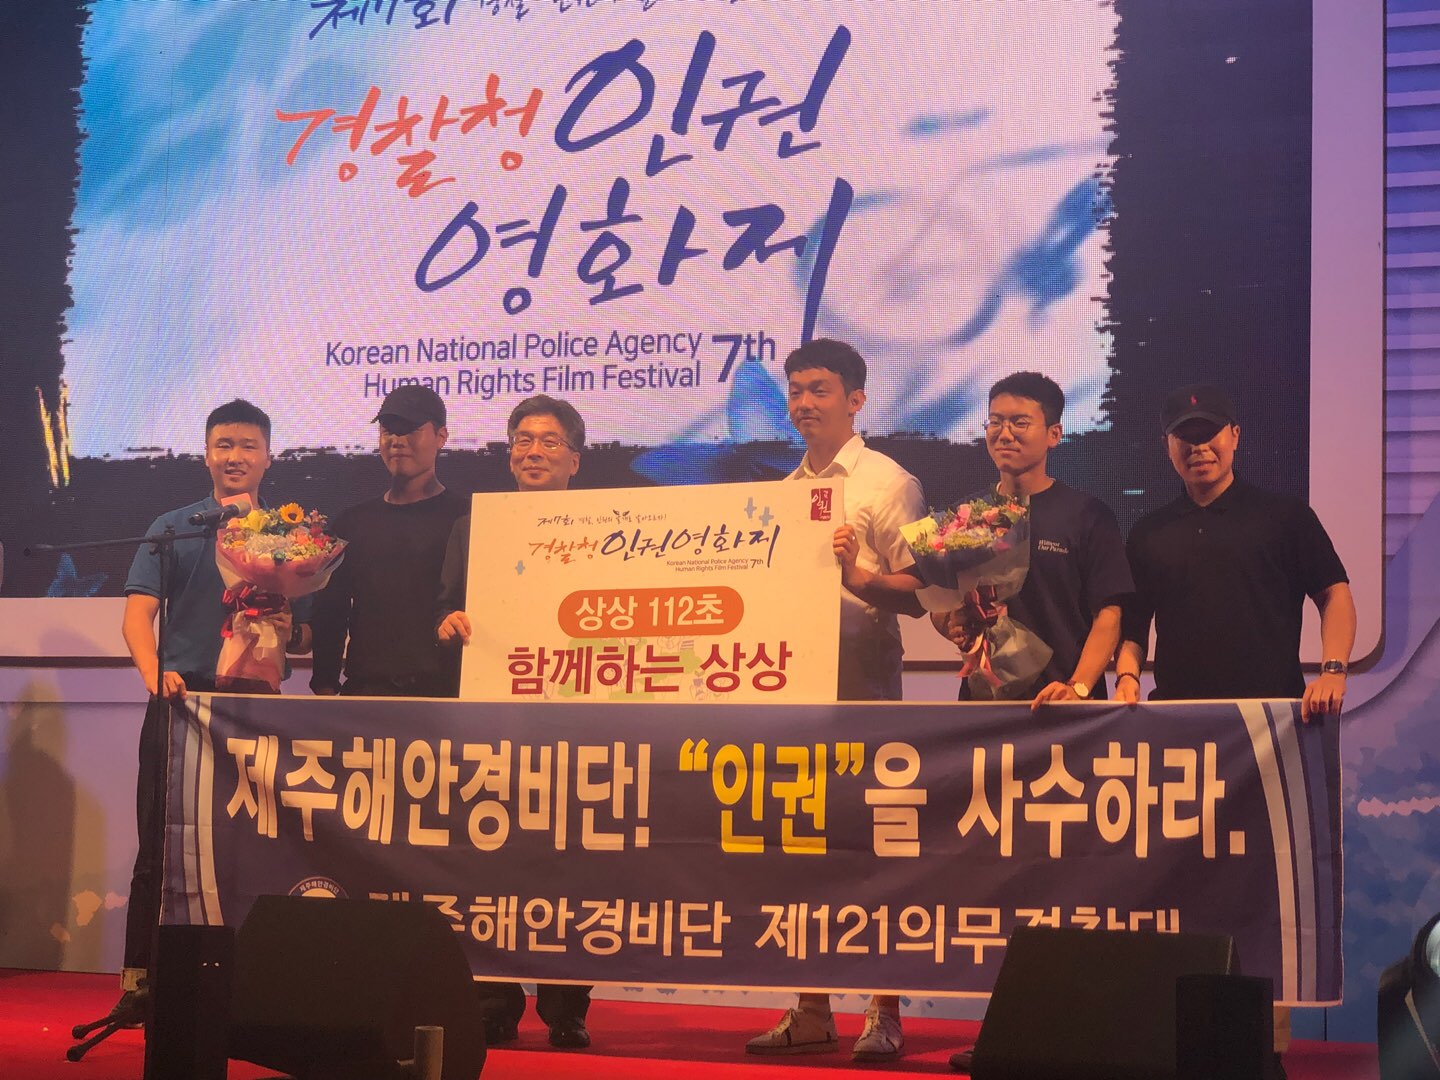 해안경비단 121의무경찰대, 제 7회 경찰청 인권영화제 대상 수상!!